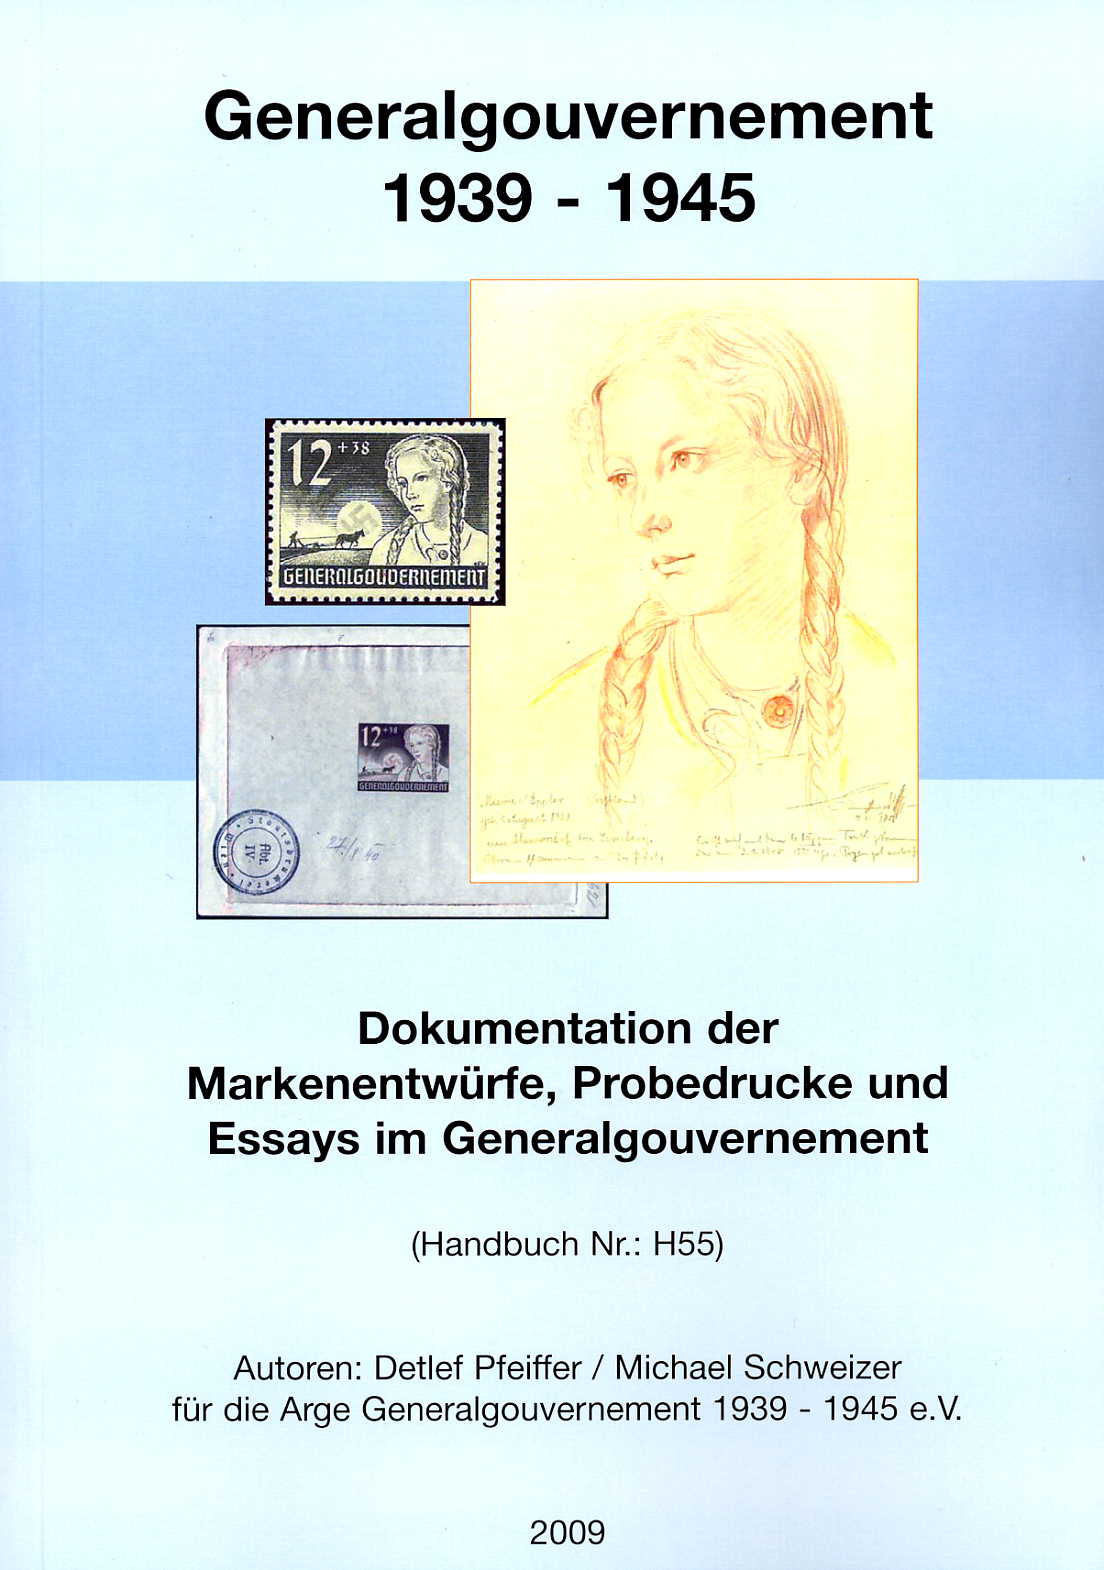 Pfeiffer/Schweizer Dokumentation der Markenentwürfe, Probedrucke